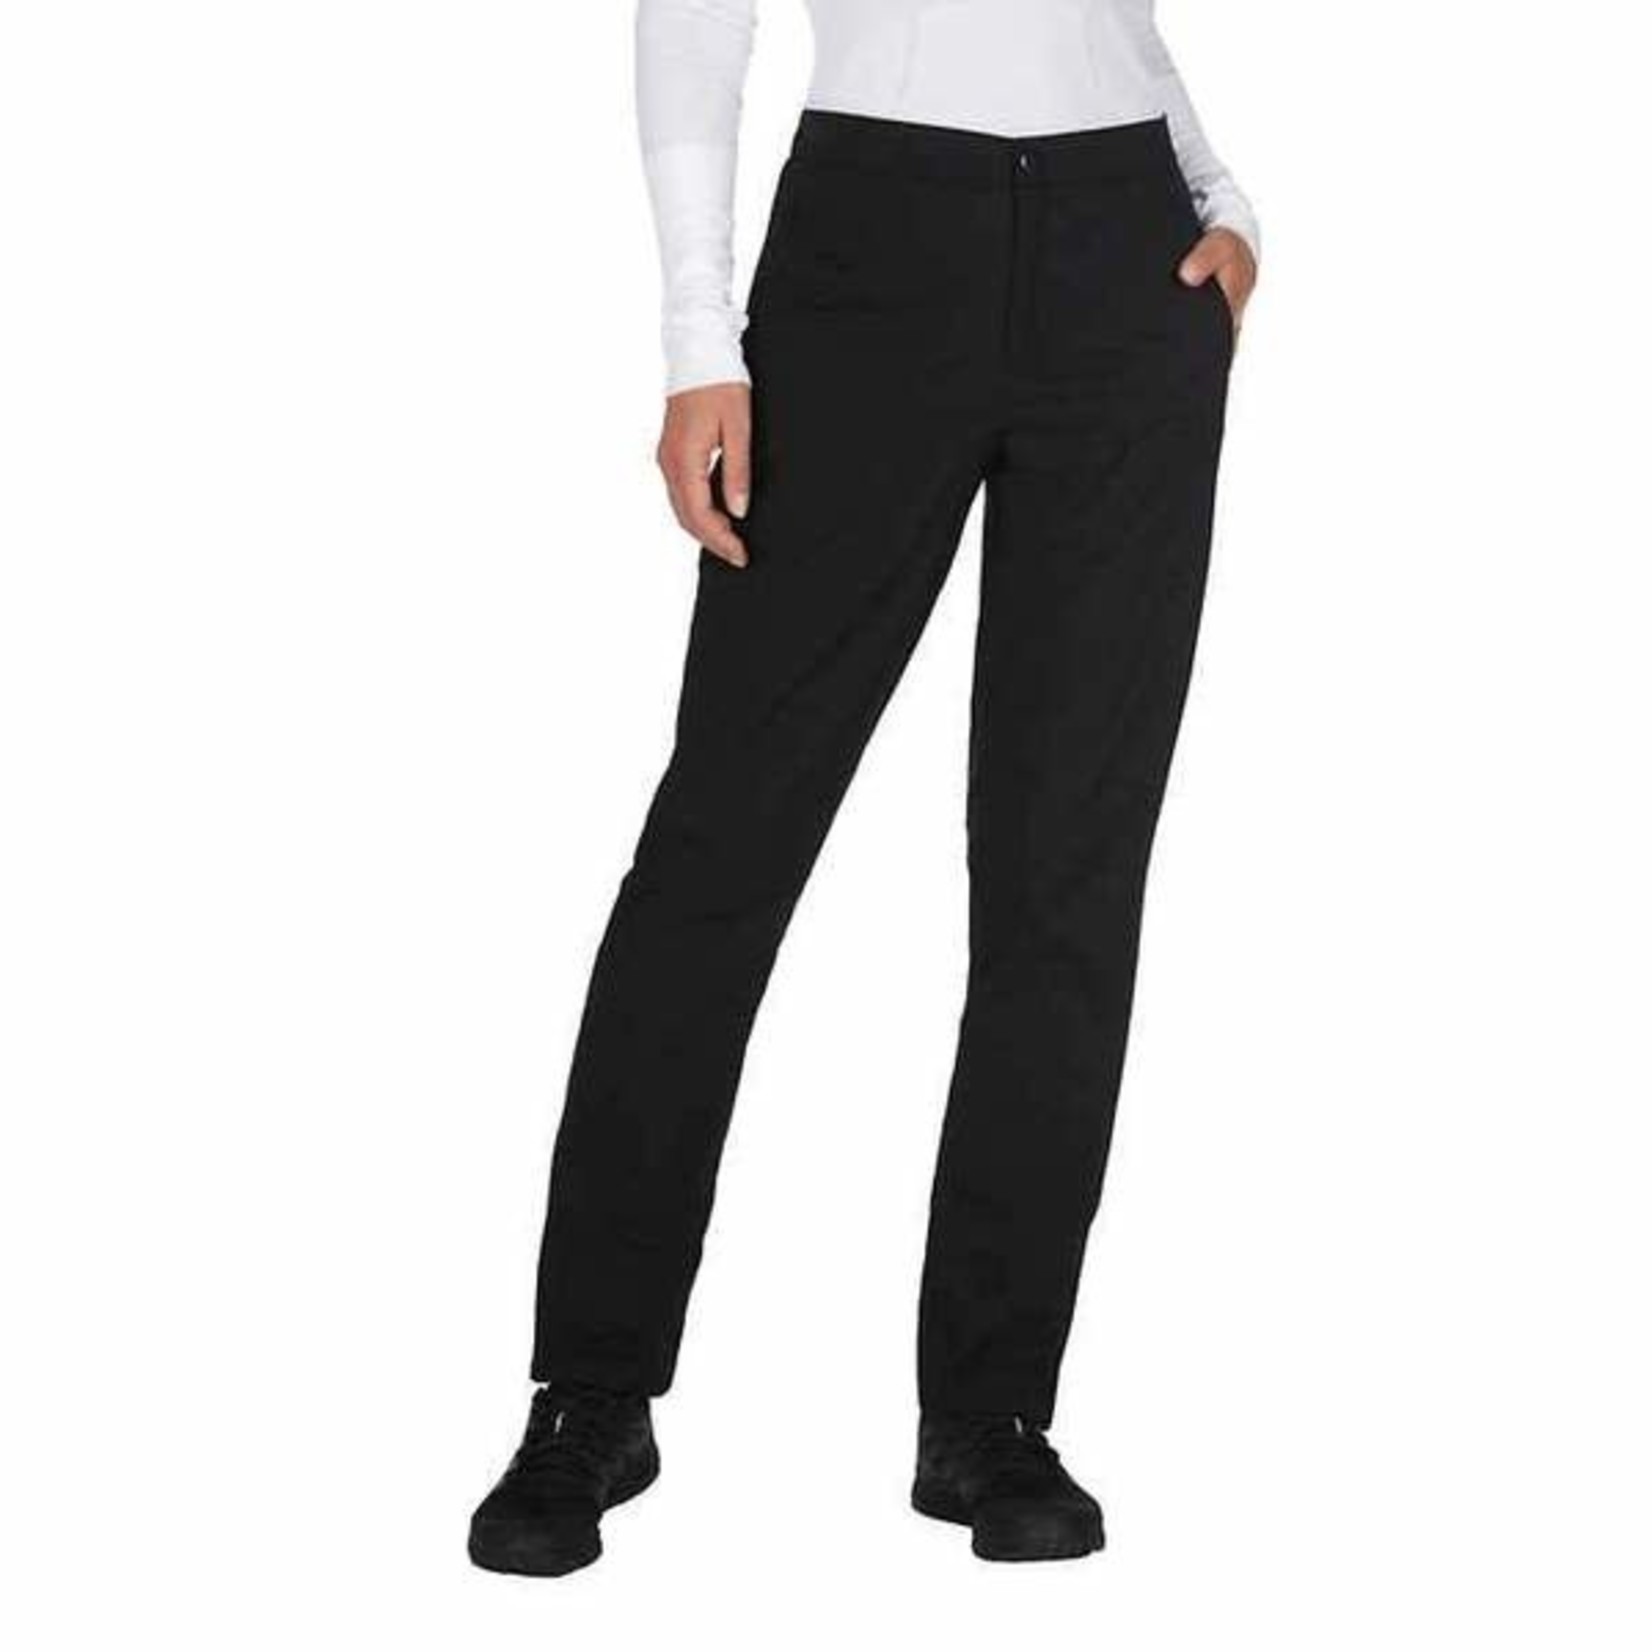 Sunice Stormpack Ladies Windproof Pants - Black or Grey M